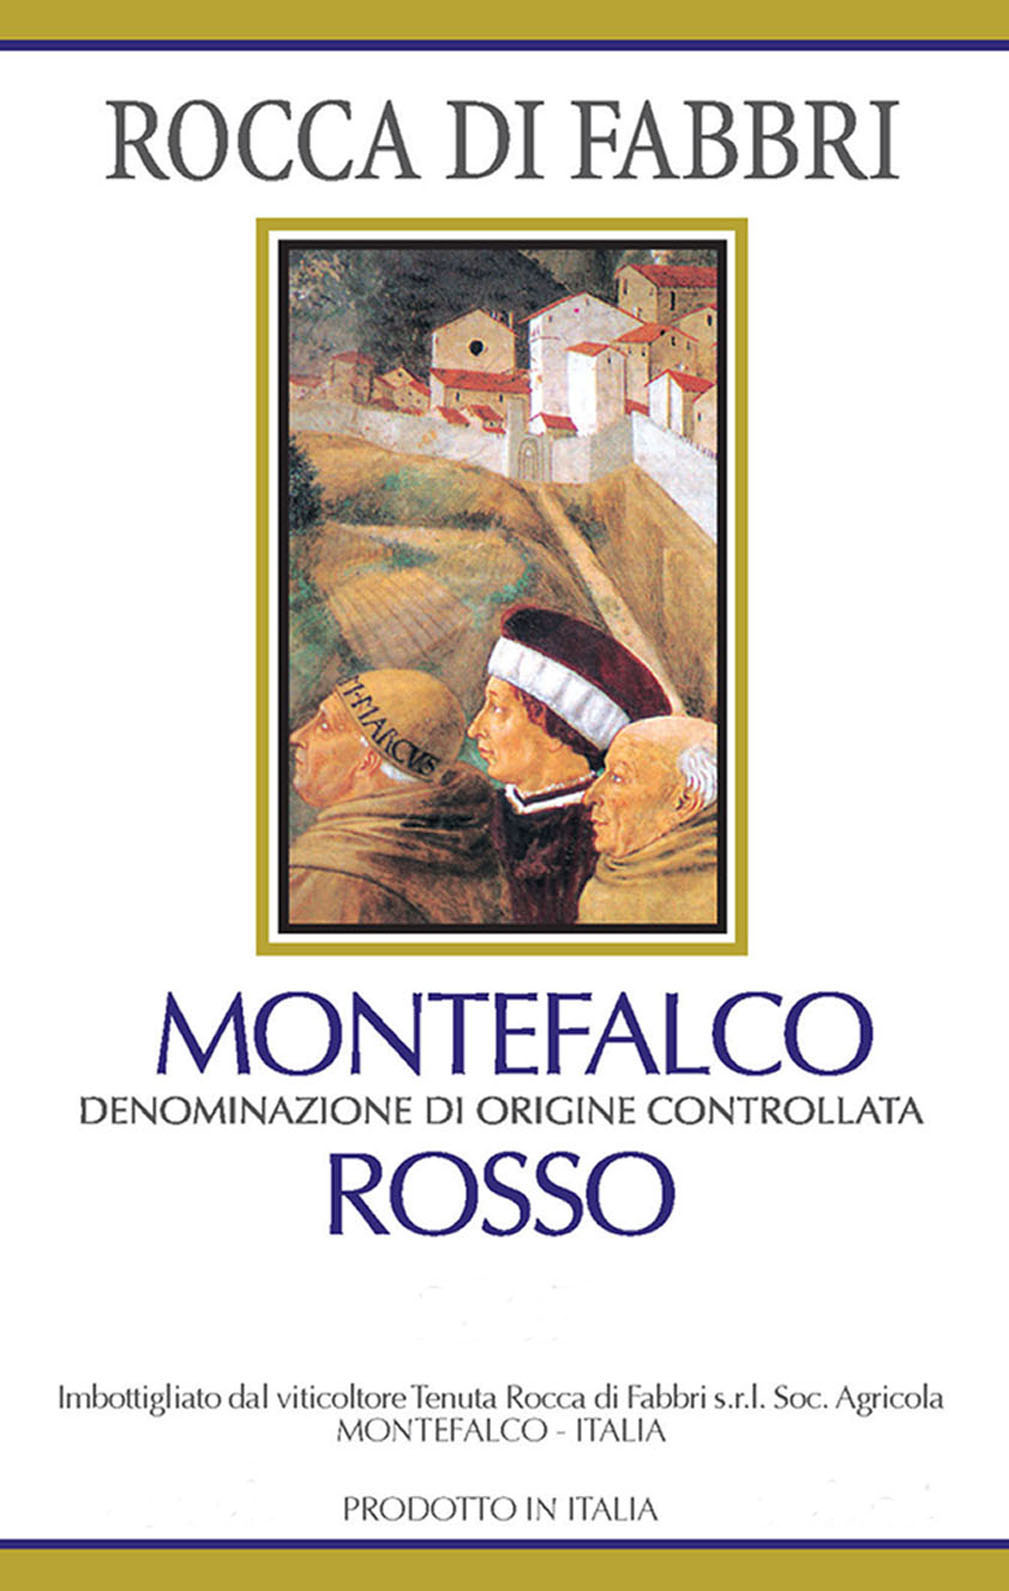 Rocca di Fabbri - Montefalco Rosso label